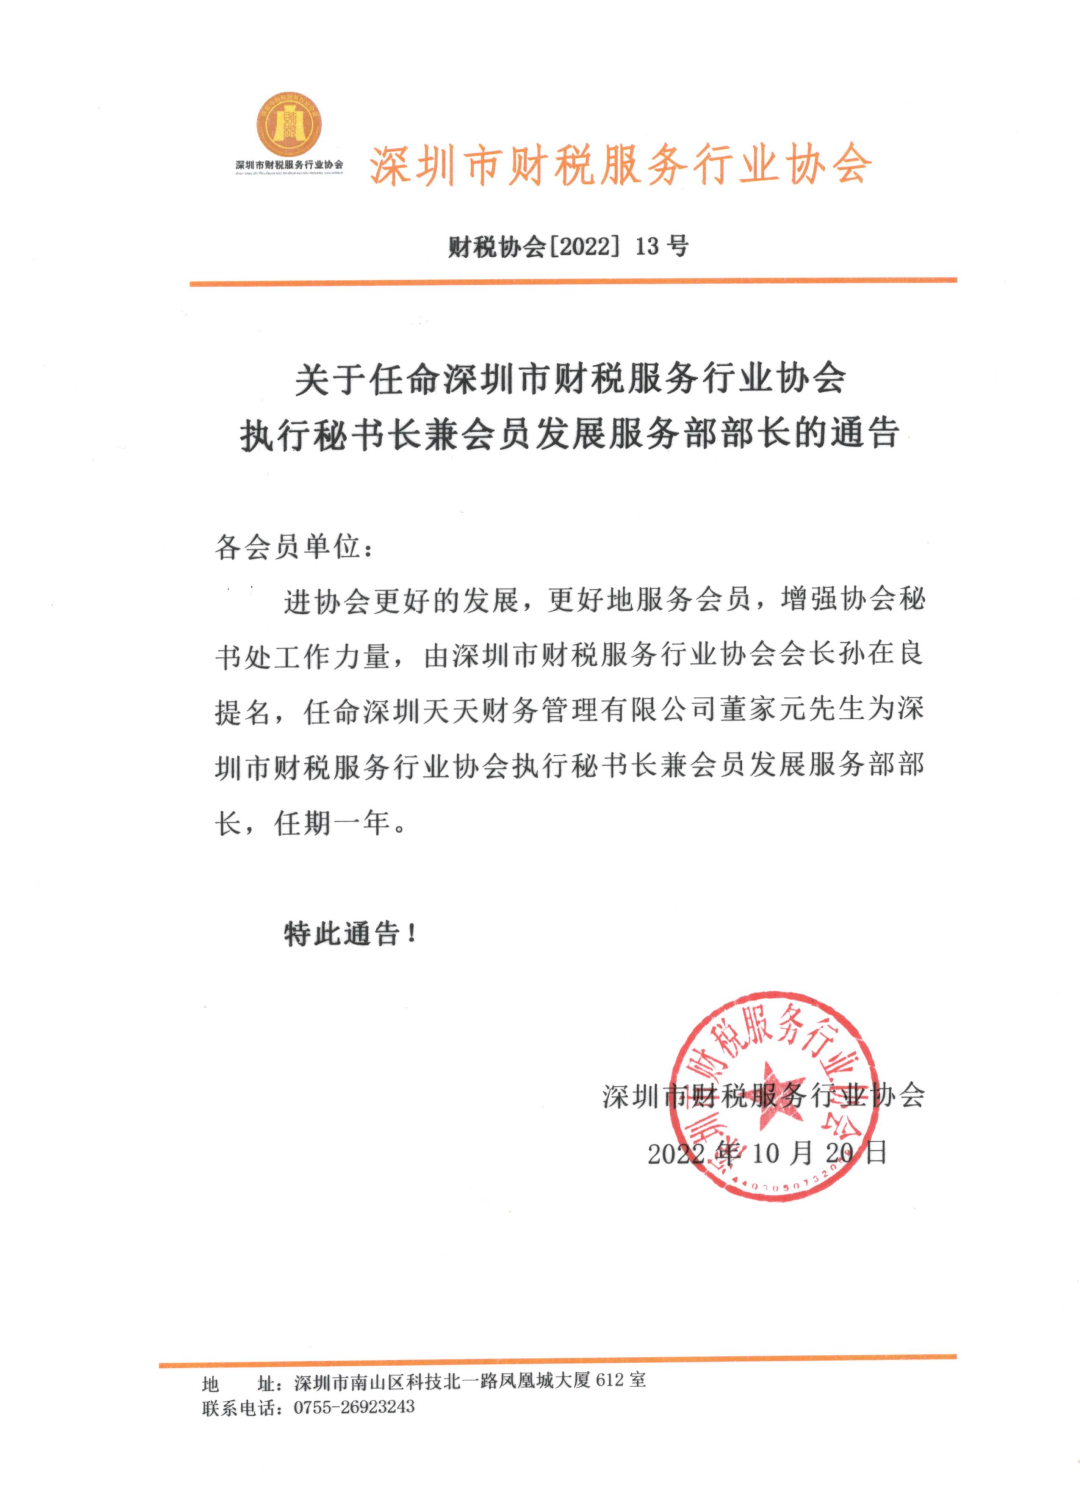 关于任命深圳市财税服务行业协会执行秘书长兼会员发展服务部部长的通告